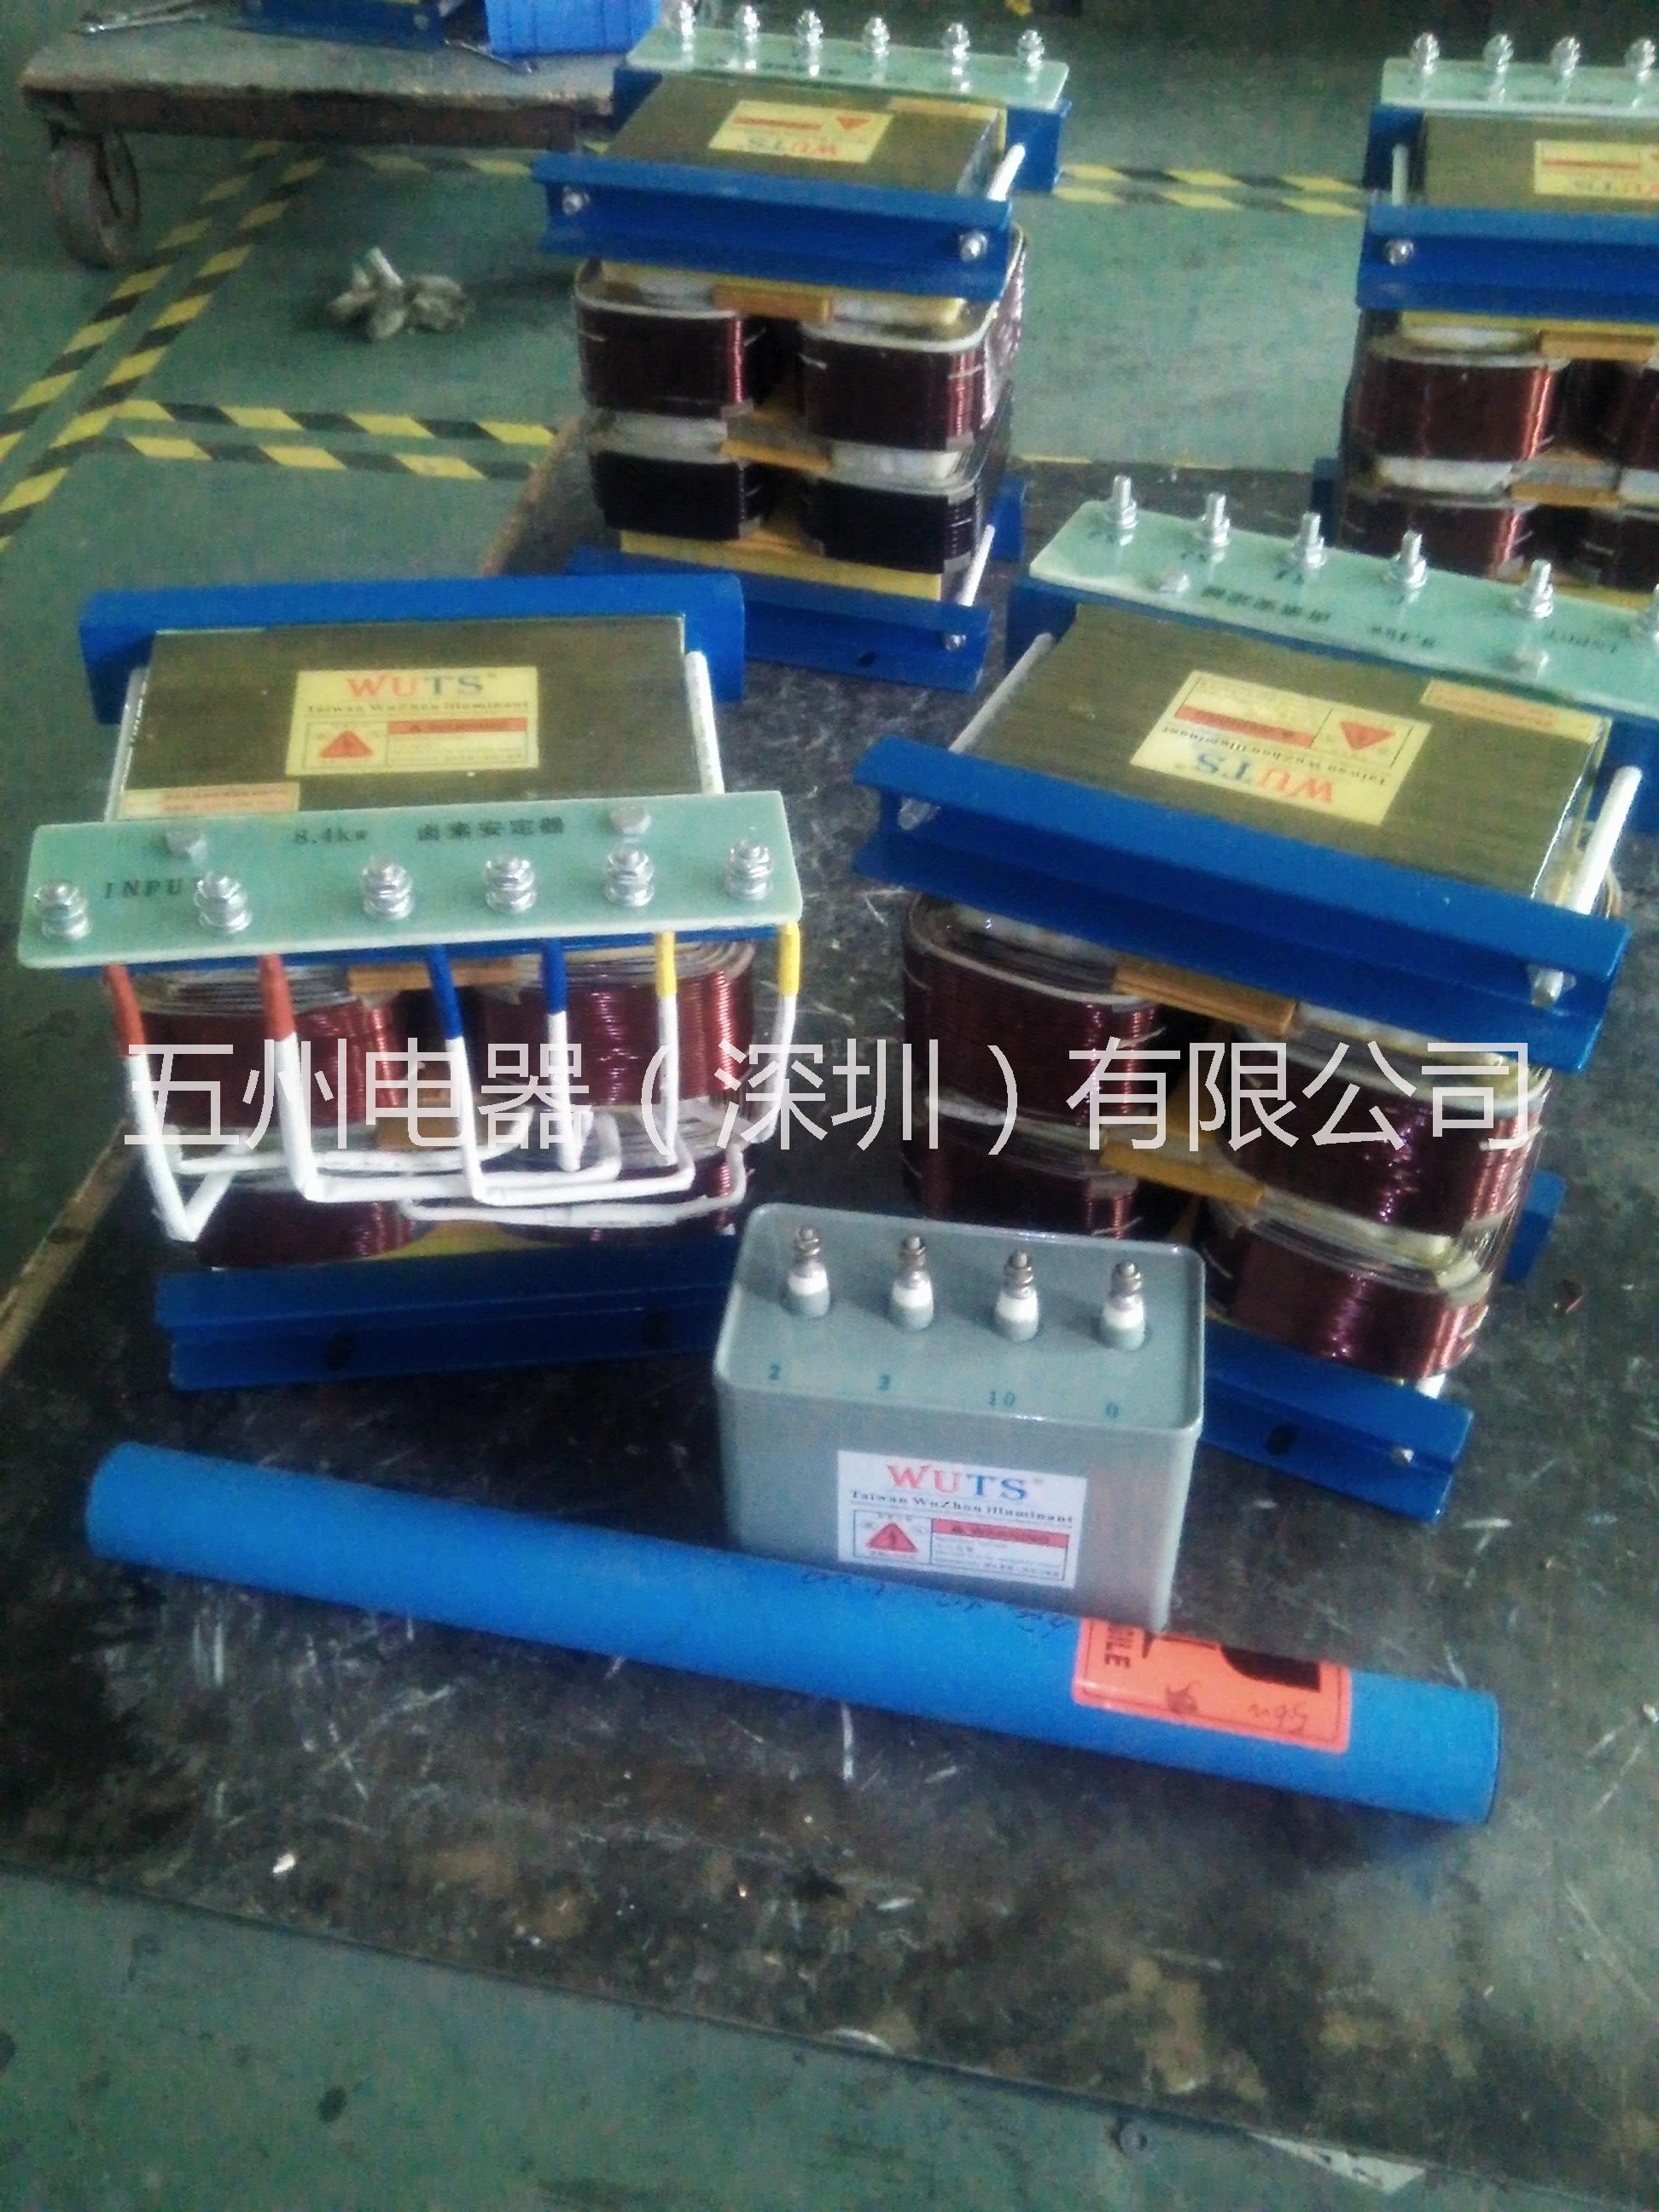 PCB设备 PCB设备厂家 深圳PCB设备厂家  线路板设备批发 五洲电器欢迎广大客户来电洽谈